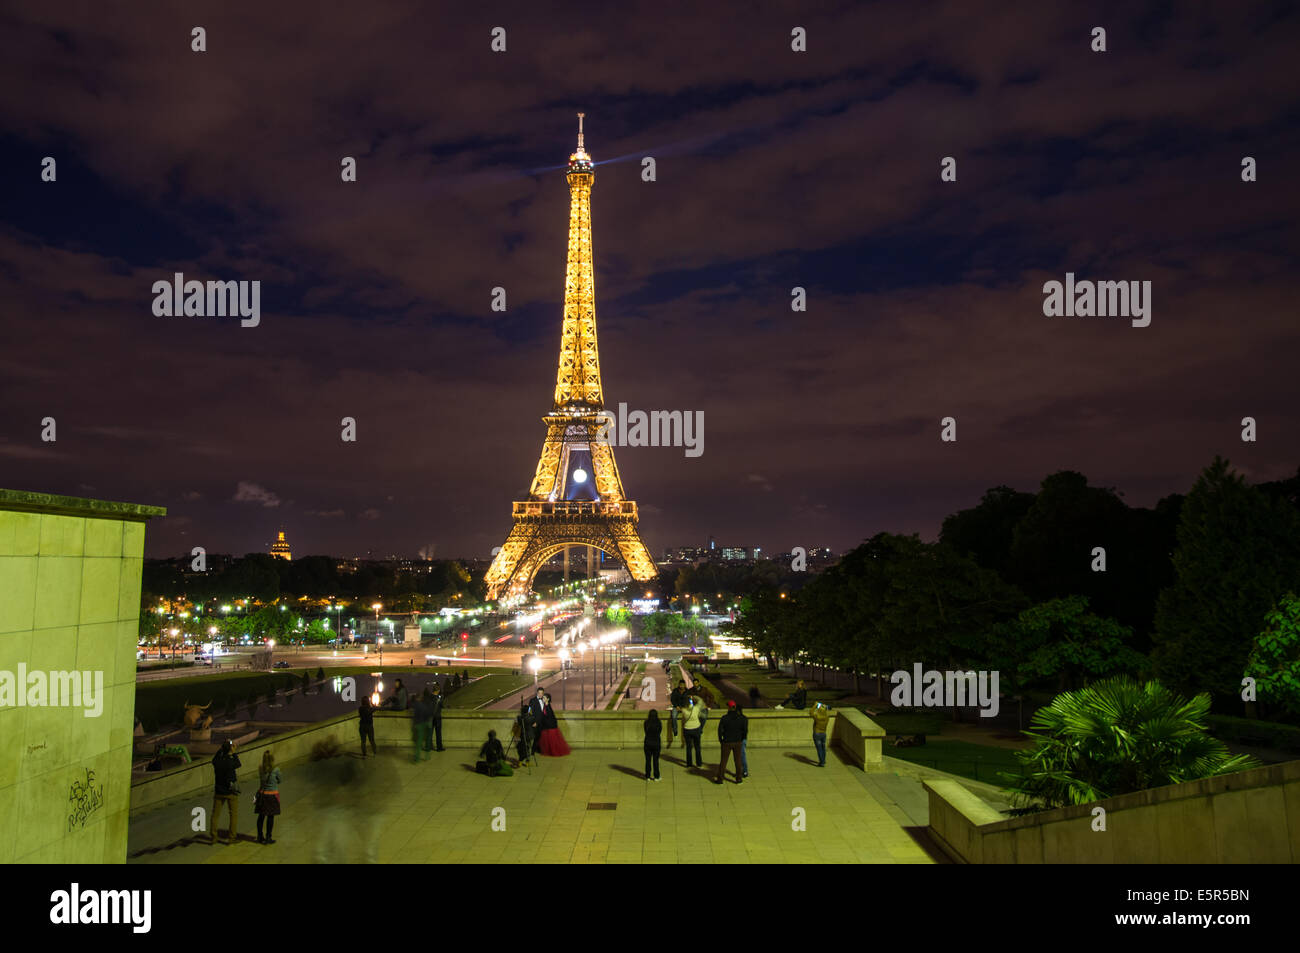 Vue de nuit de la Tour Eiffel, du Trocadéro, Paris, France Banque D'Images